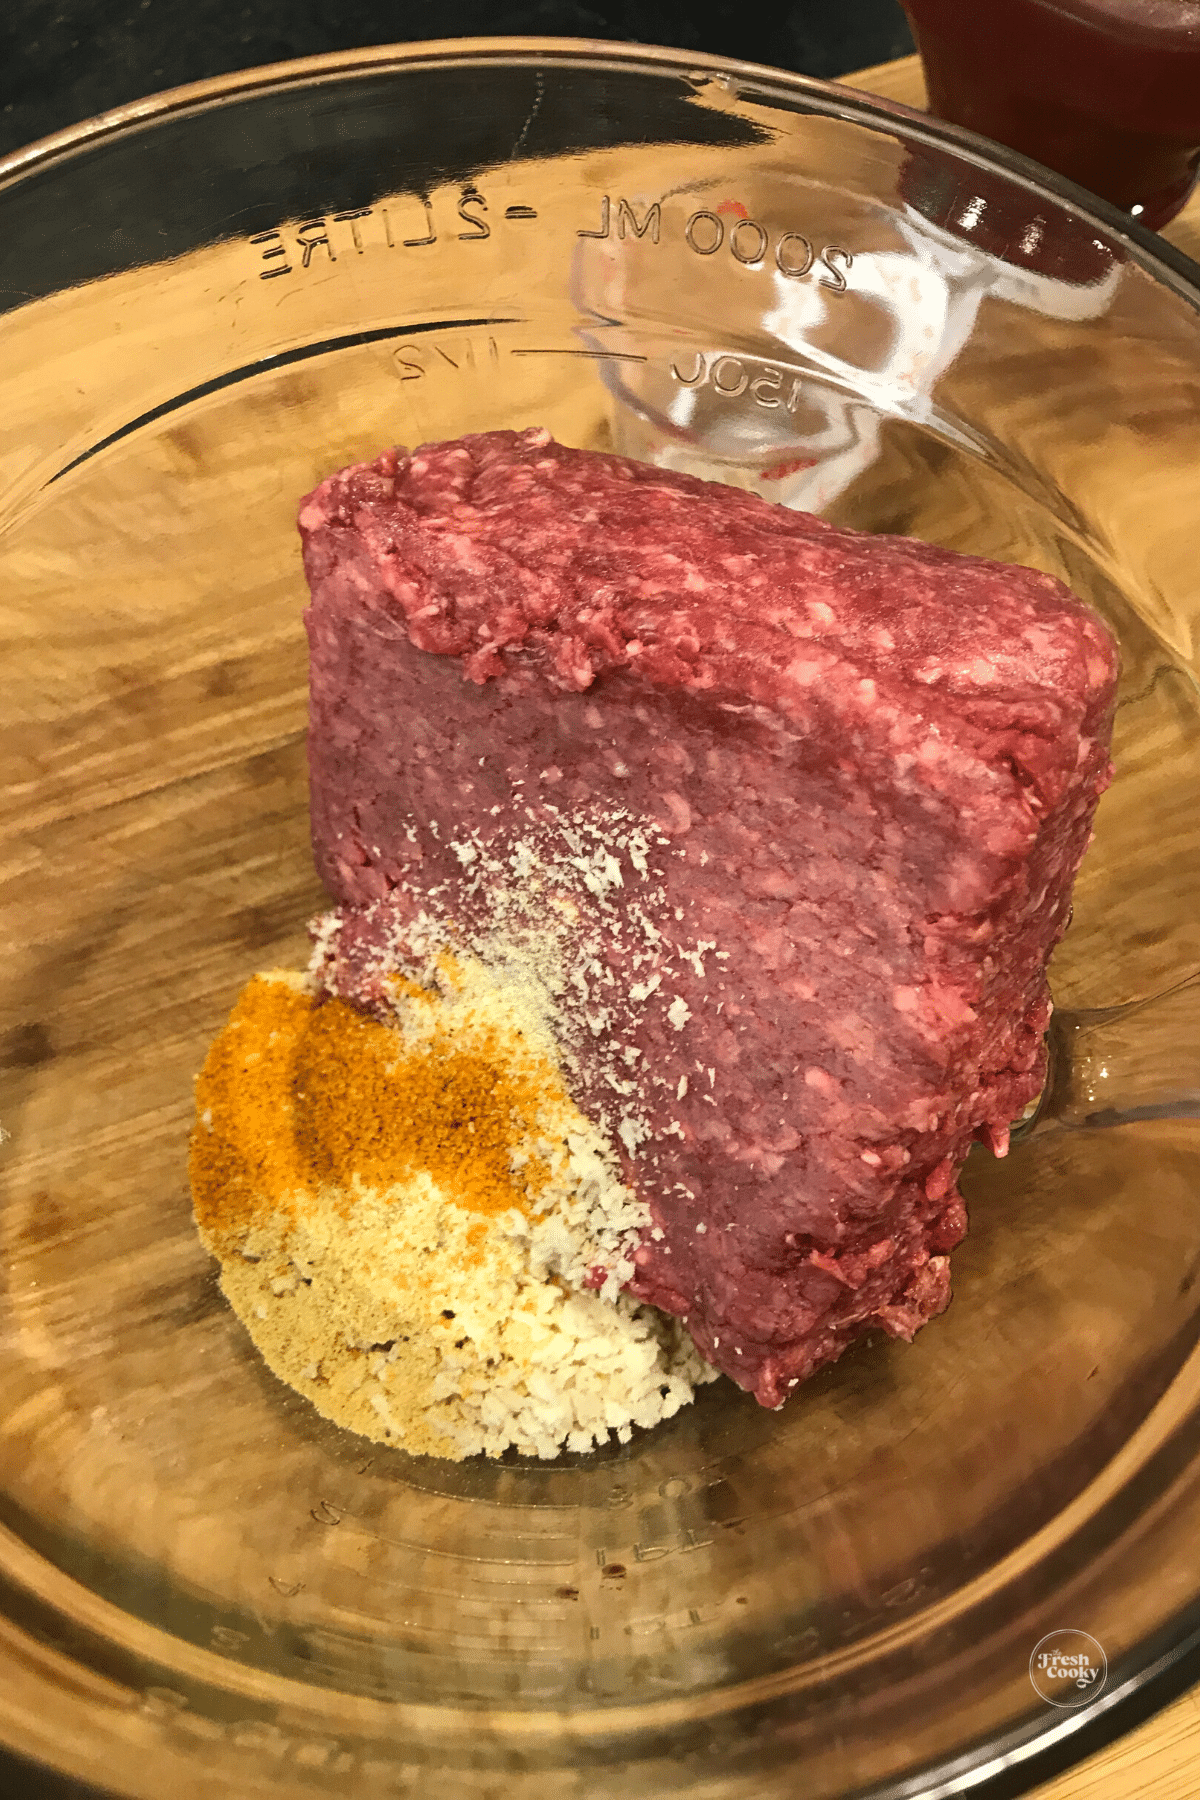 Seasonings in bison meat.